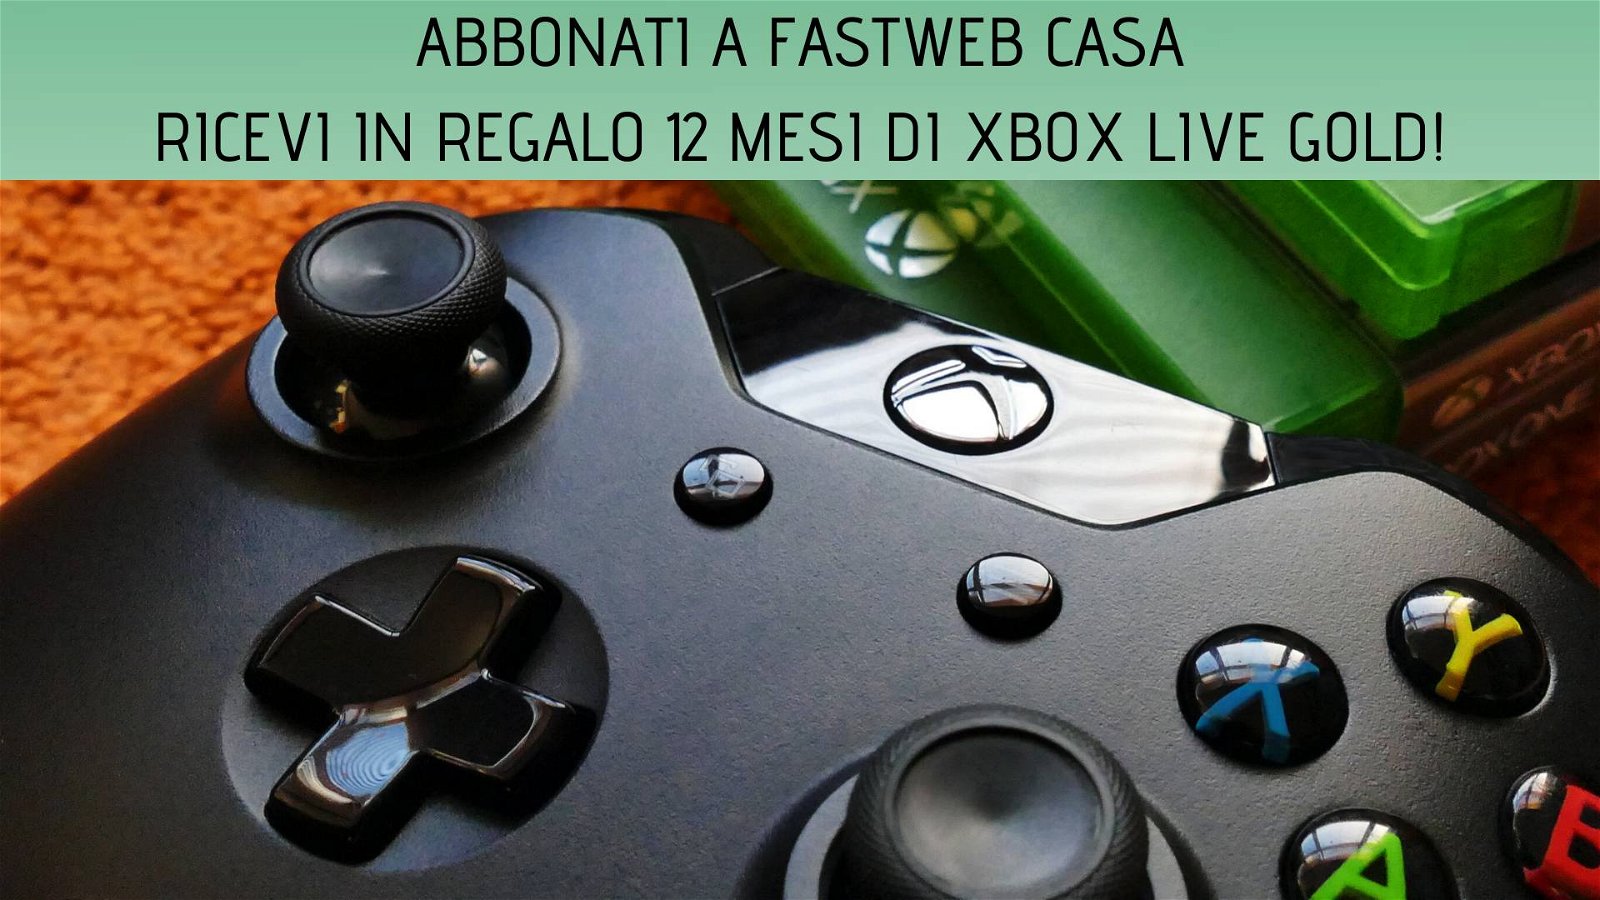 Immagine di Xbox Live Gold gratuito per 12 mesi con Fastweb Casa